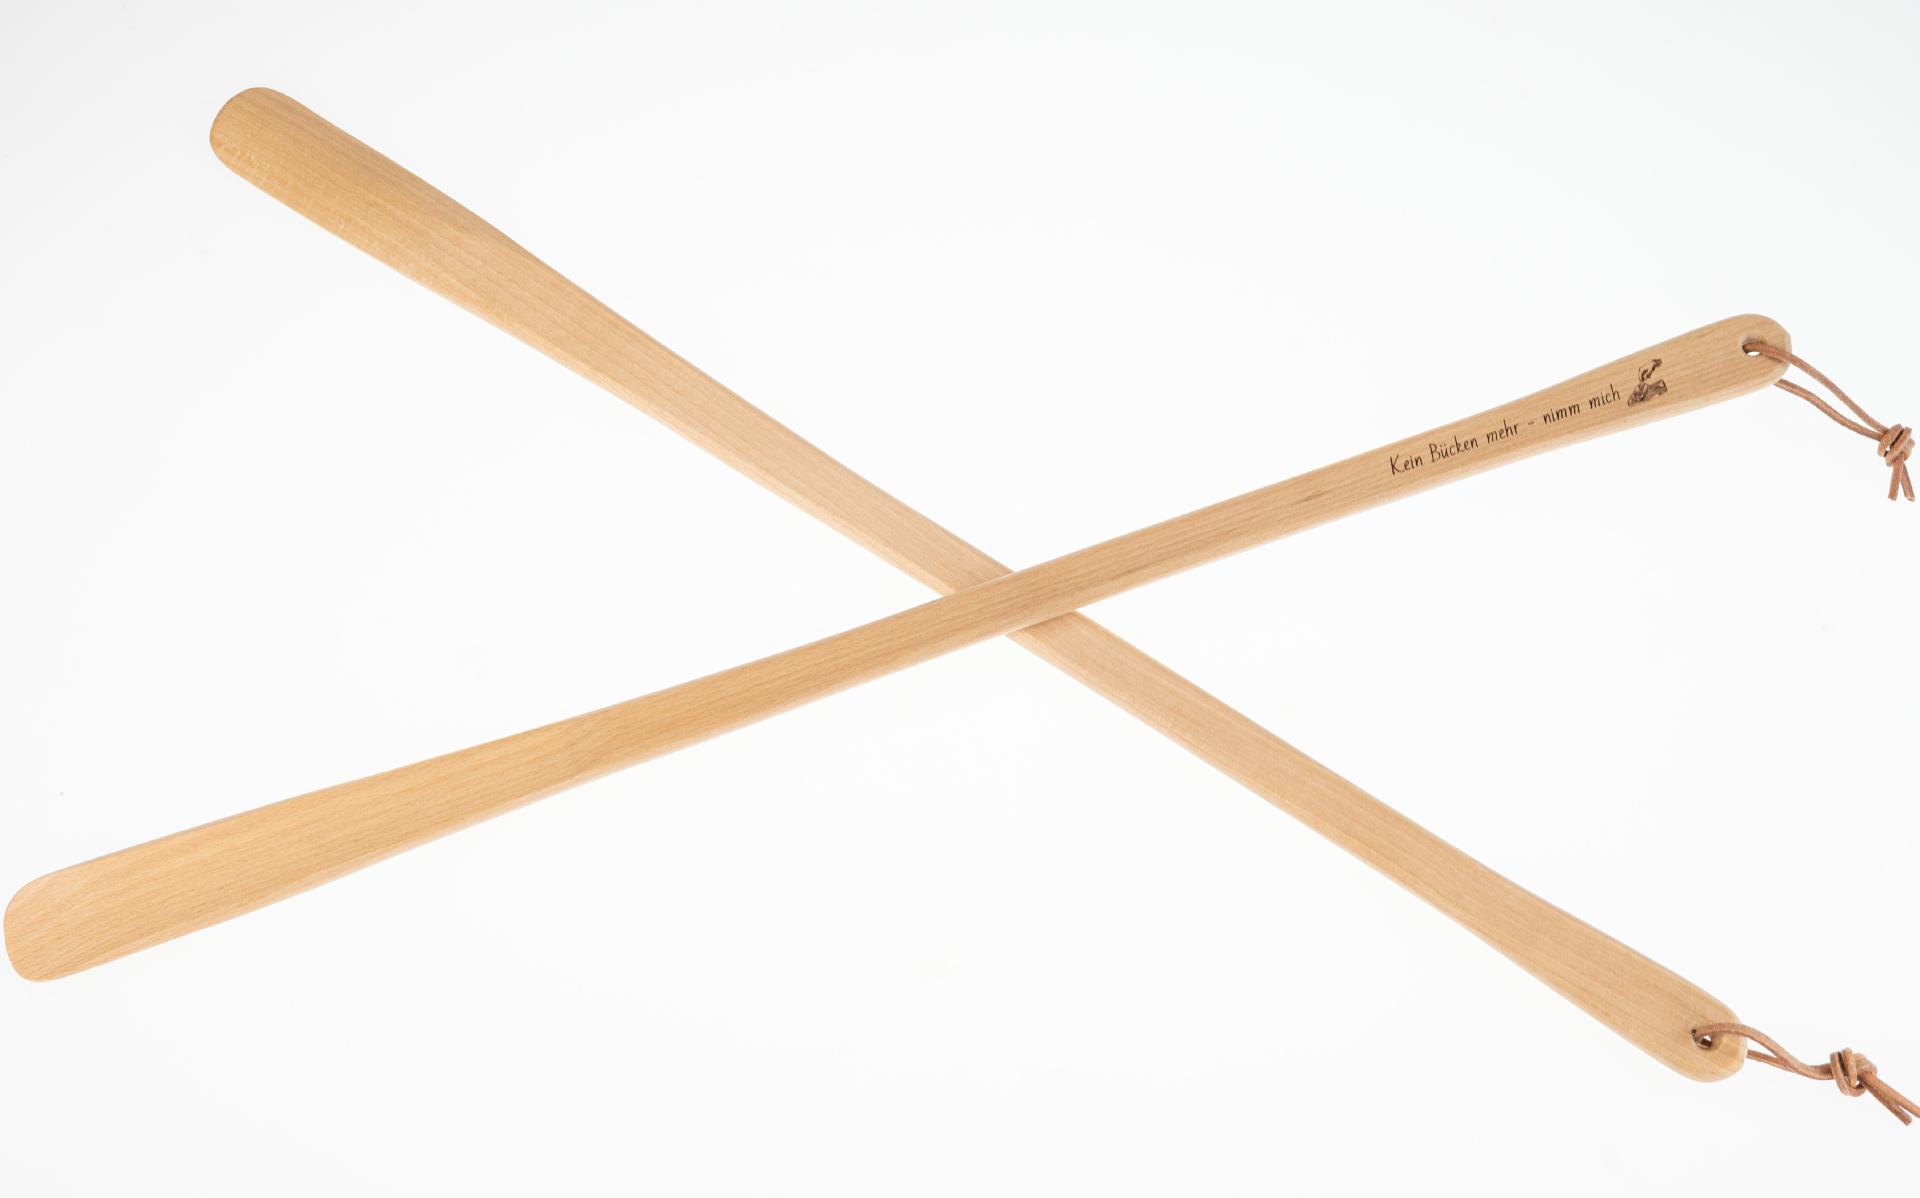 Holz Schuhlöffel | 65 cm mit Lederband | Gravur "Kein Bücken mehr, nimm mich"